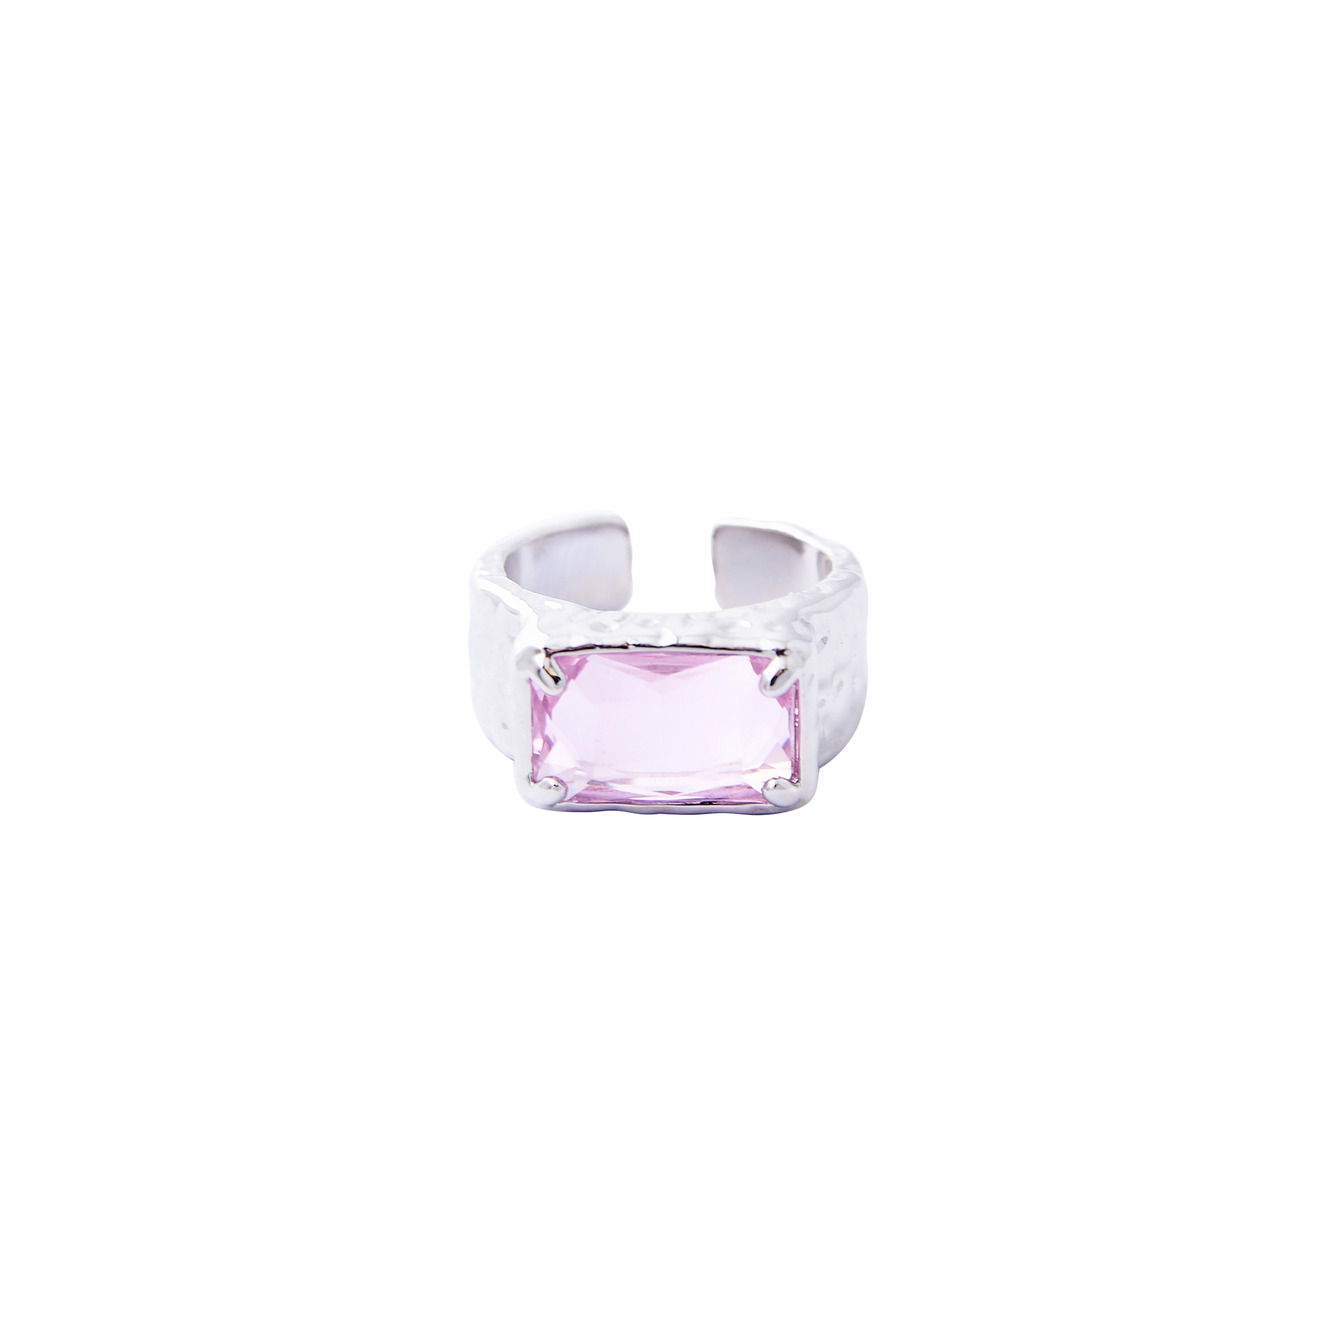 Herald Percy Серебристое кольцо с крупным розовым кристаллом herald percy золотистая цепочка с подвеской сердцем с кристаллом